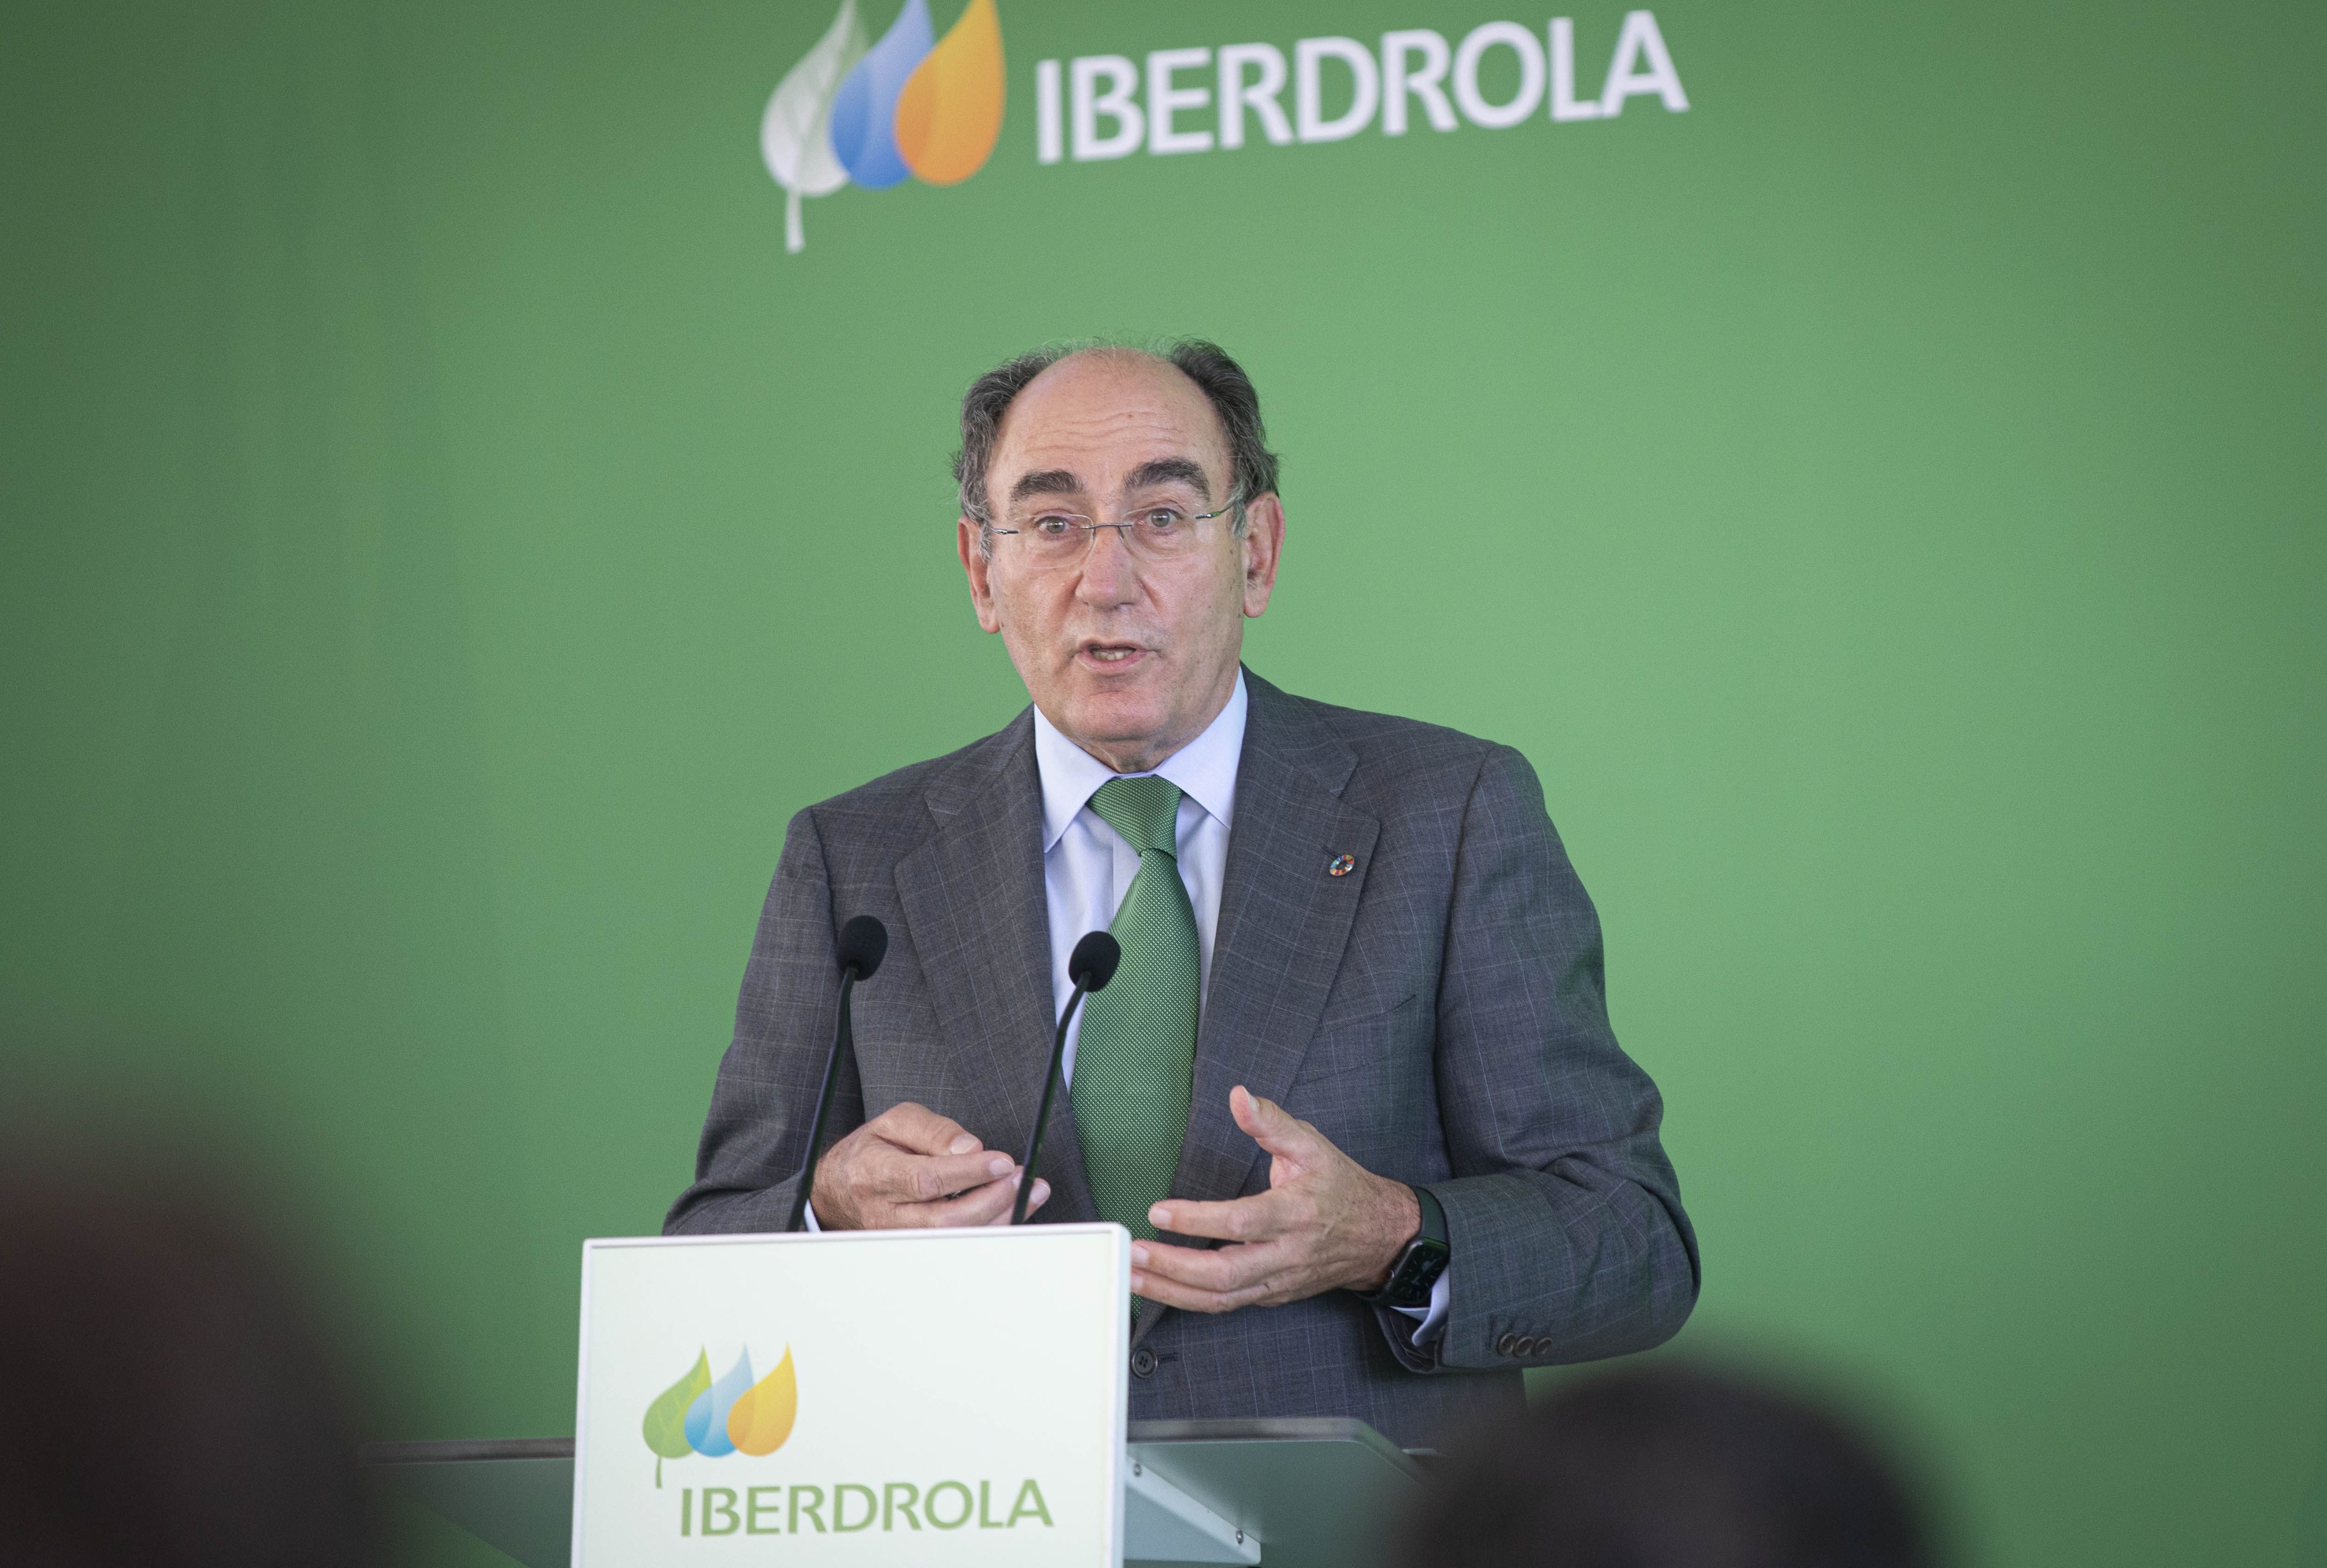 El presidente de Iberdrola, Ignacio Sánchez Galán.
María José López - Europa Press
